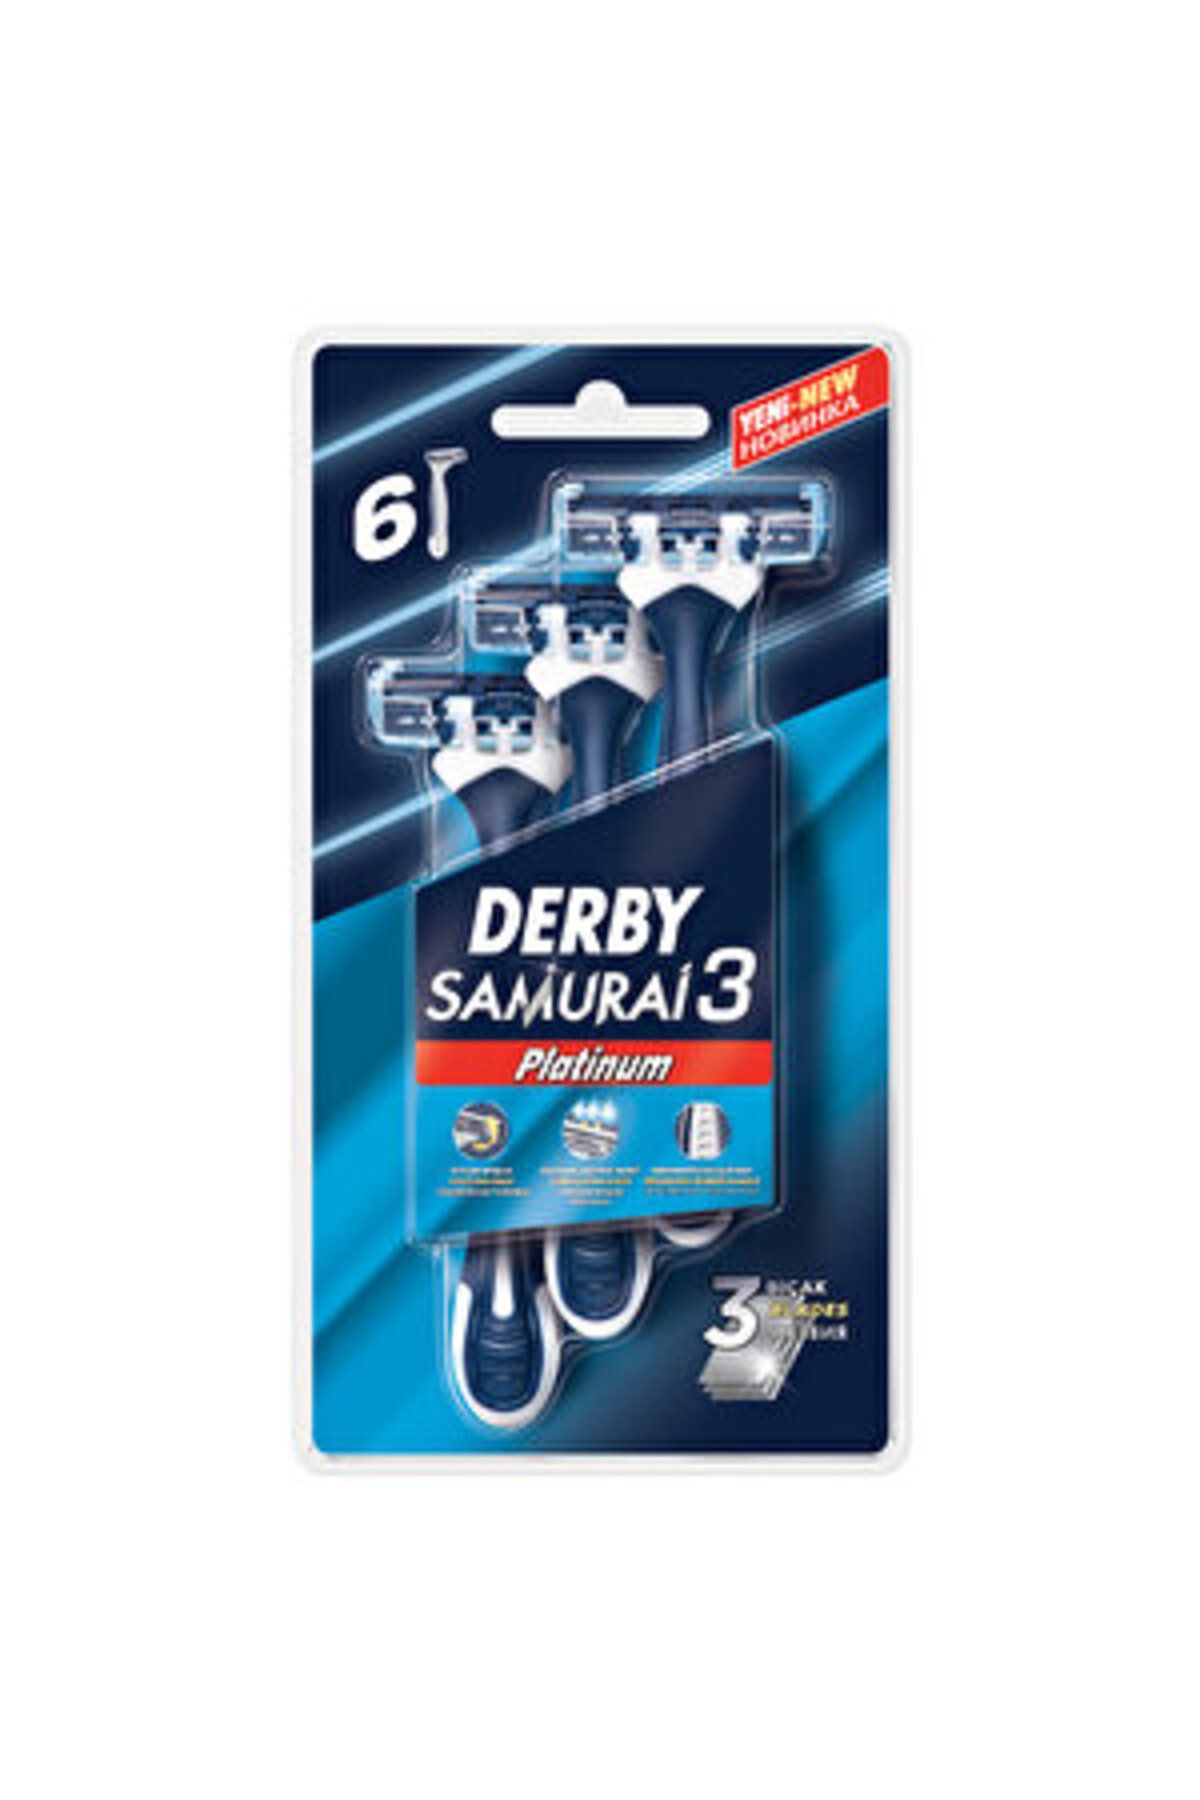 Derby ( FIRÇALIK HEDİYE ) Derby Samurai 3 Platinum Tıraş Bıçağı 6'lı ( 1 ADET )